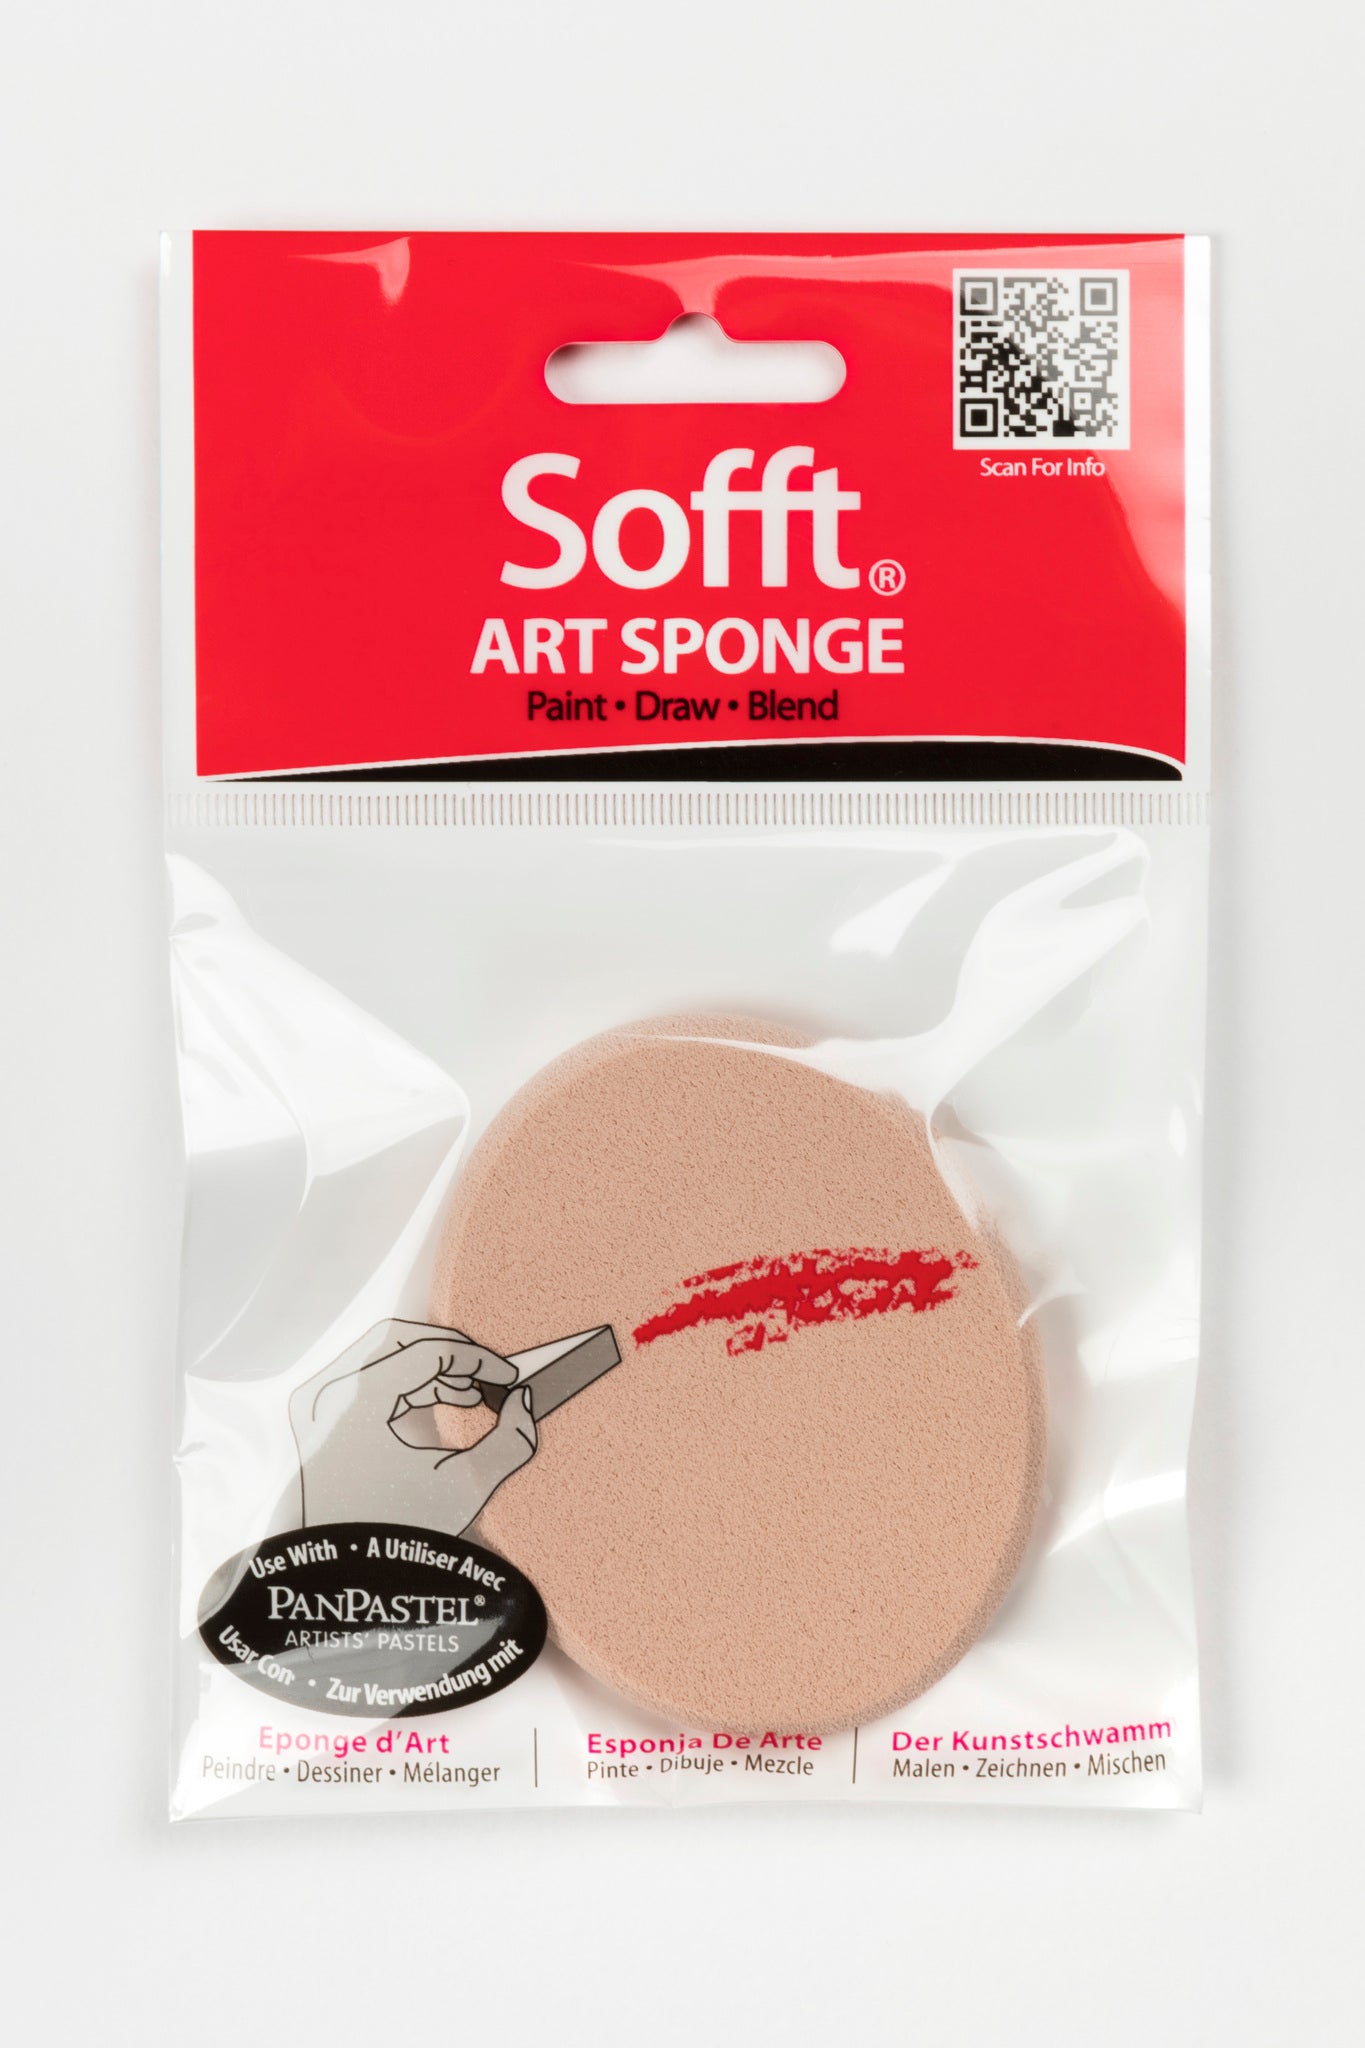 PanPastel Sofft tools Soft Sponge  - Big Oval Sponge 61041